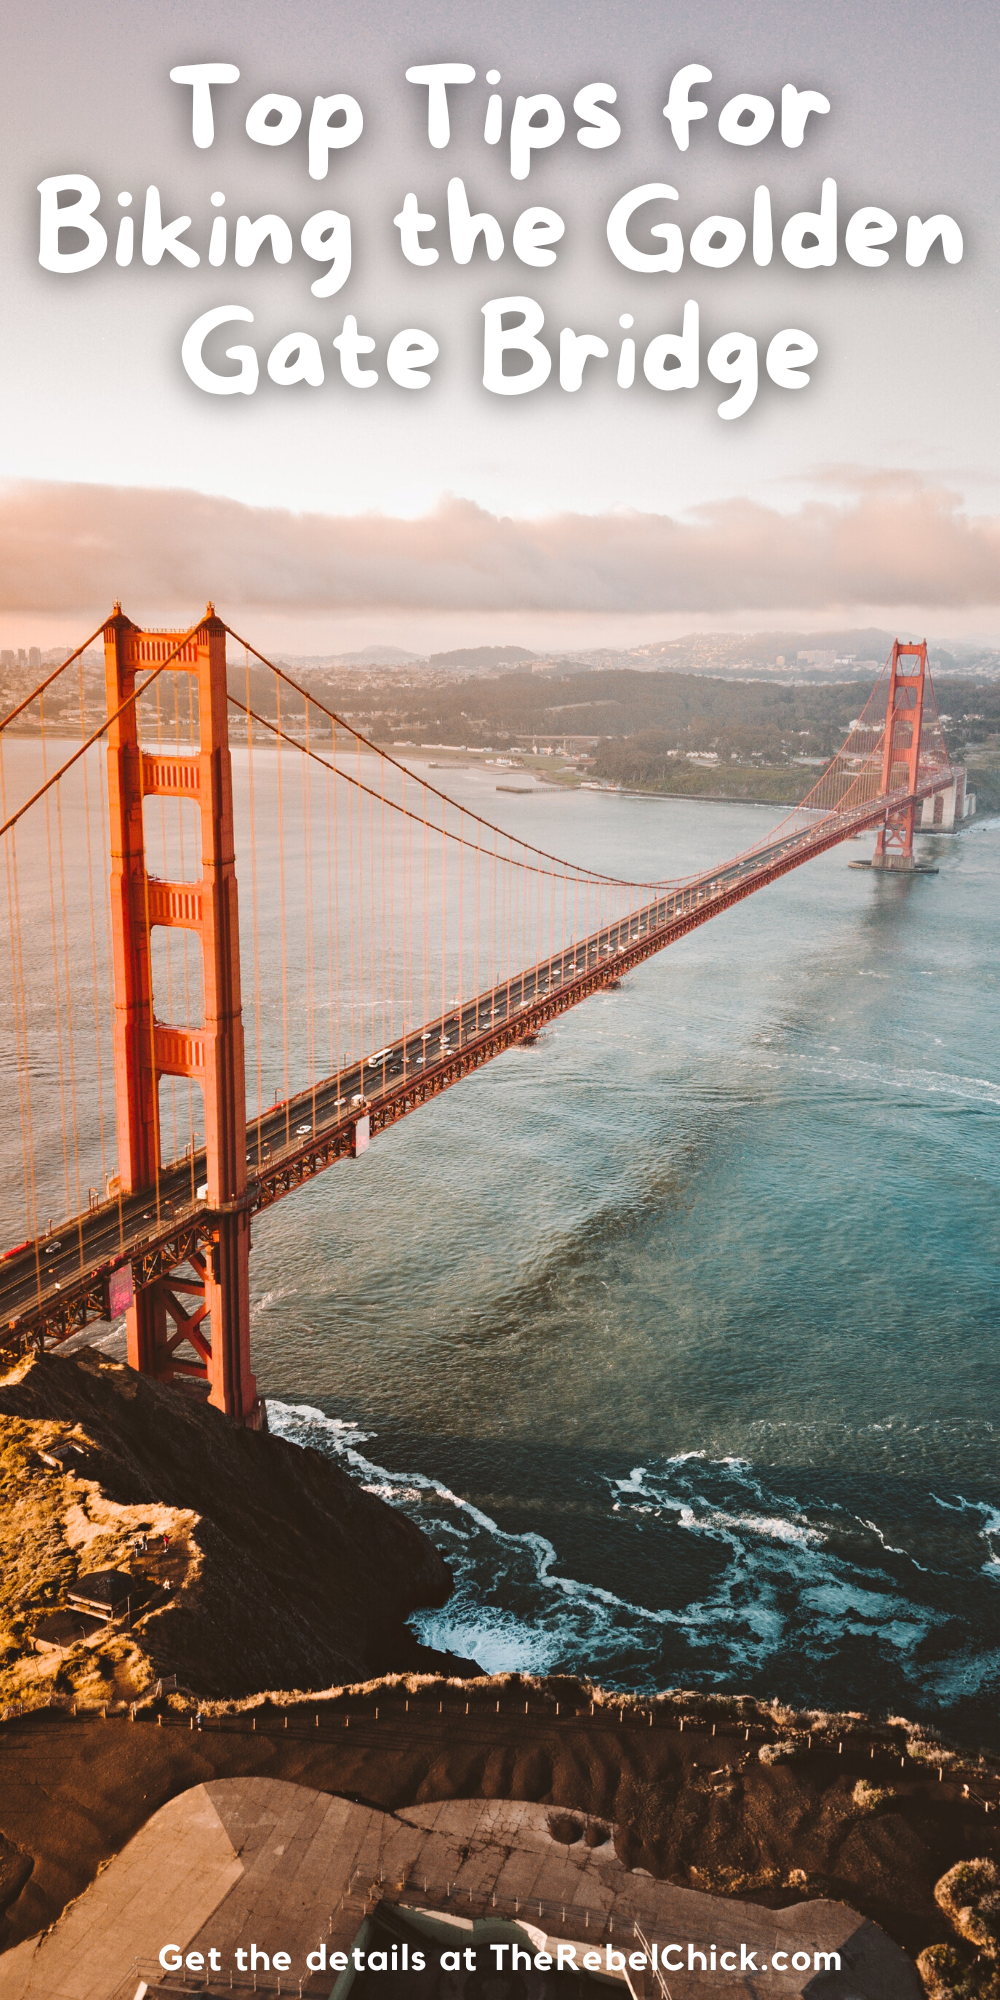 Top Tips for Biking the Golden Gate Bridge